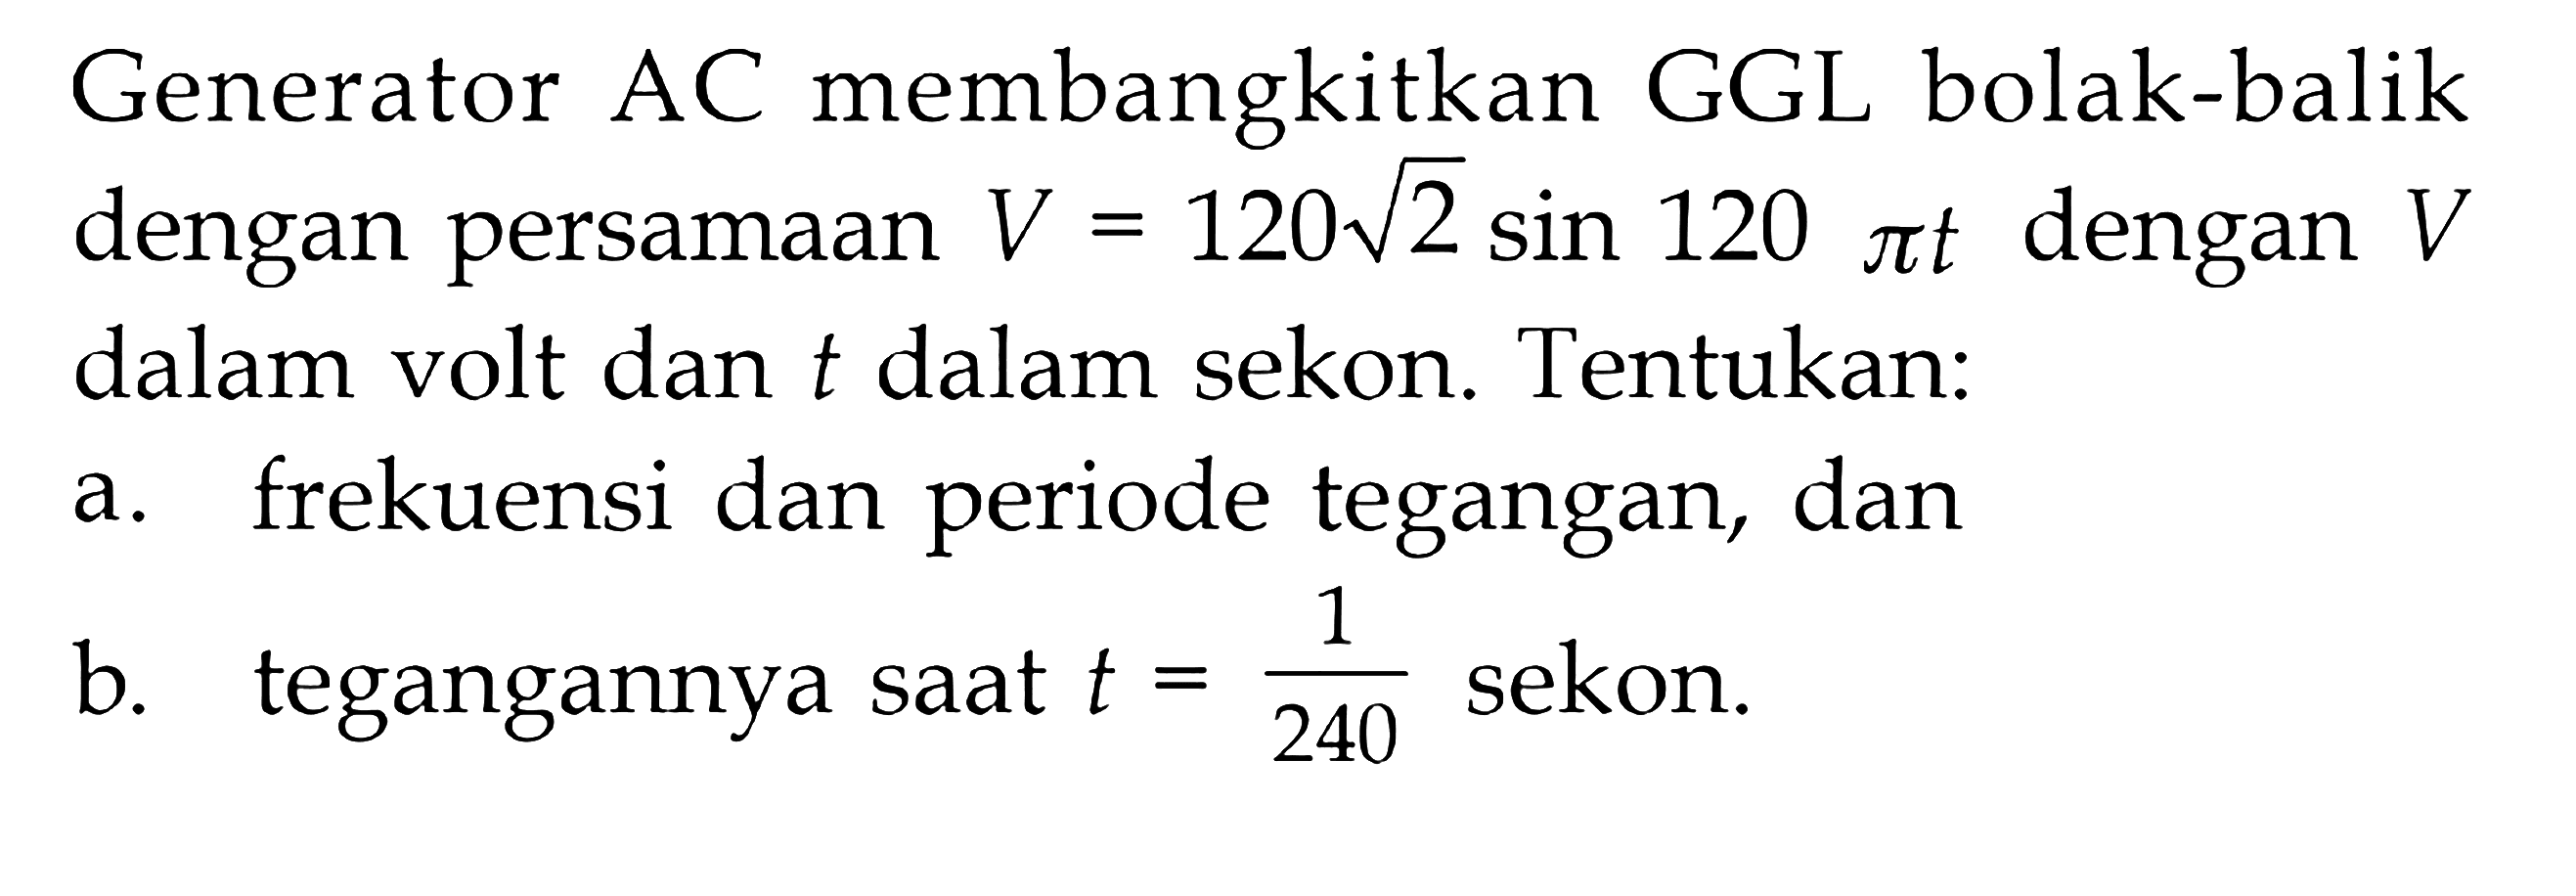 Generator AC membangkitkan GGL bolak-balik dengan persamaan V = 120akar(2) sin 120 pi t dengan V dalam volt dan t dalam sekon. Tentukan: a. frekuensi dan periode tegangan, dan b. tegangannya saat t = 1/240 sekon.